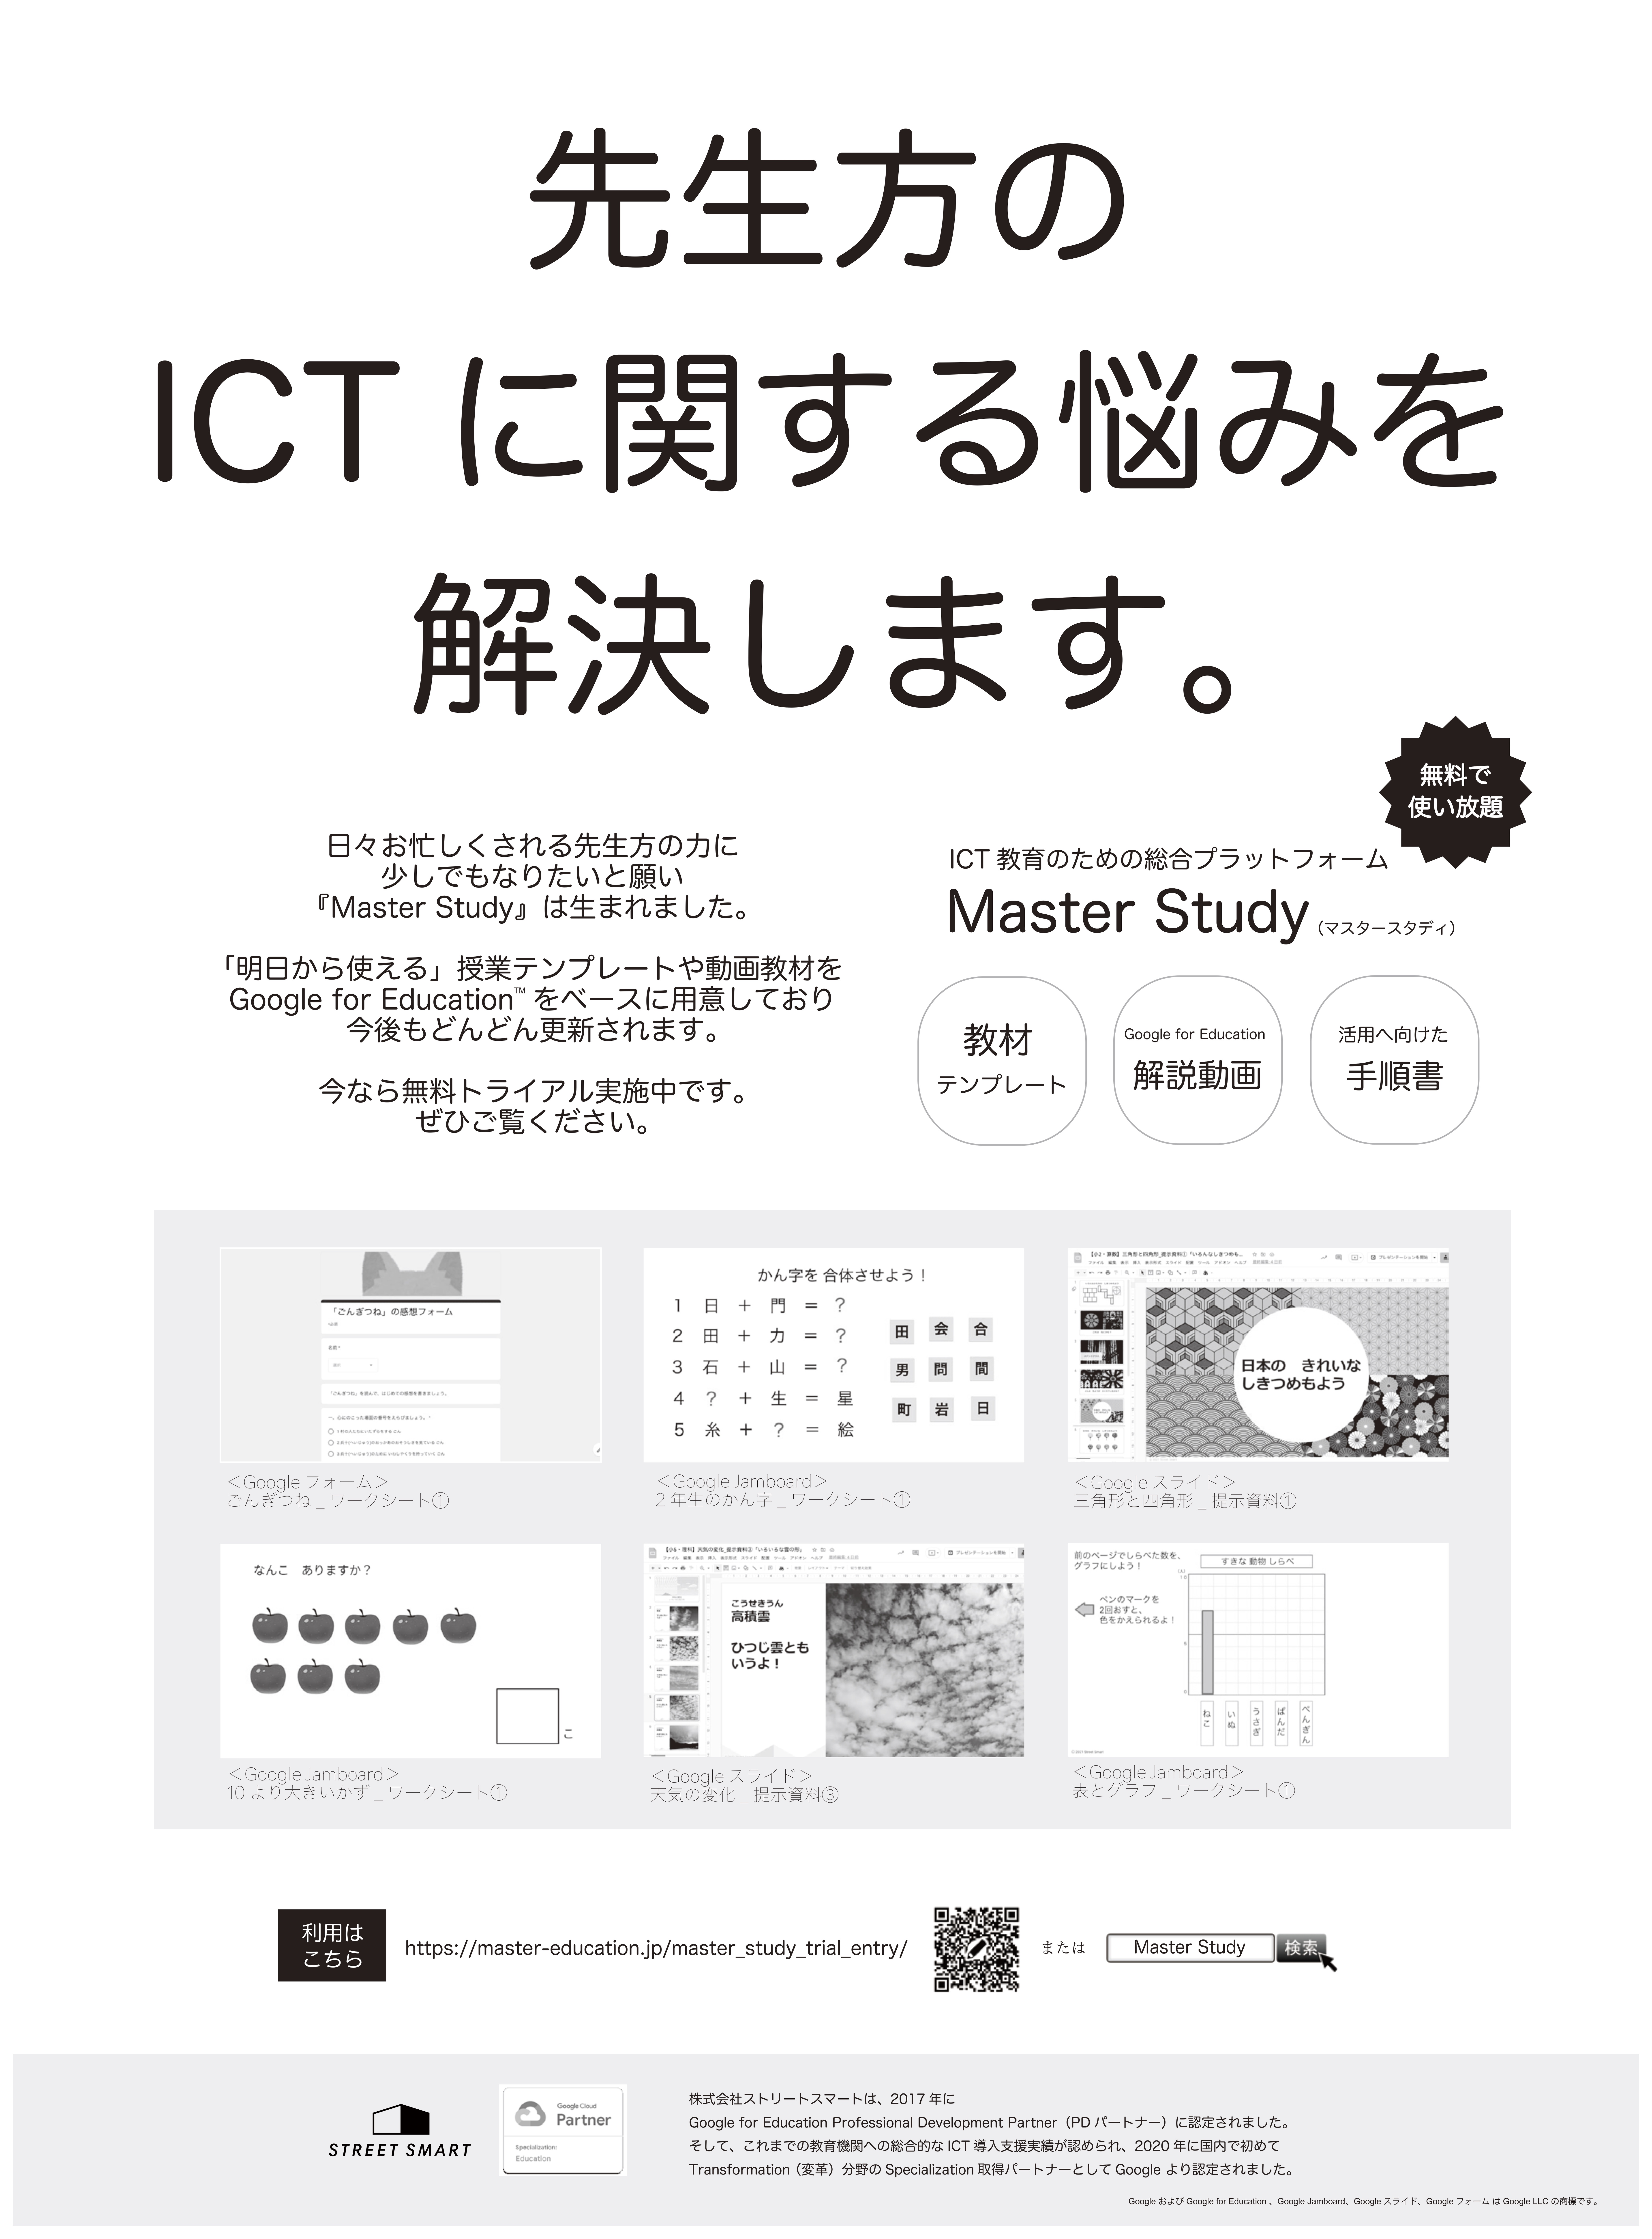 『Master Study』に関する広告掲載のお知らせ／教育家庭新聞（2021年8月2日）